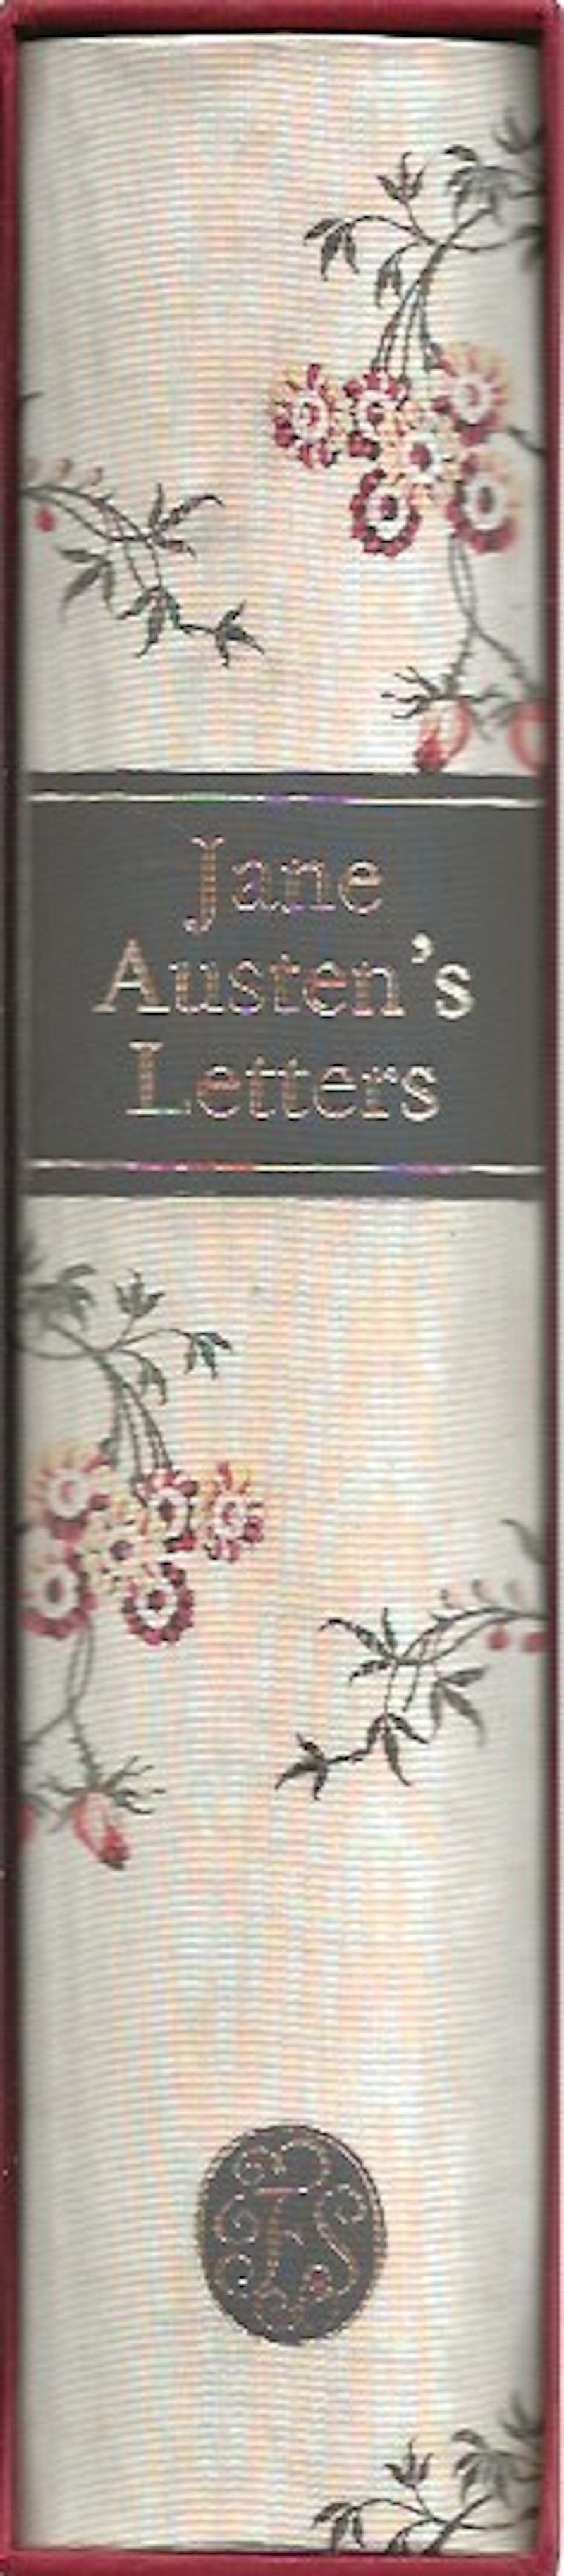 Jane Austen's Letters by Austen, Jane